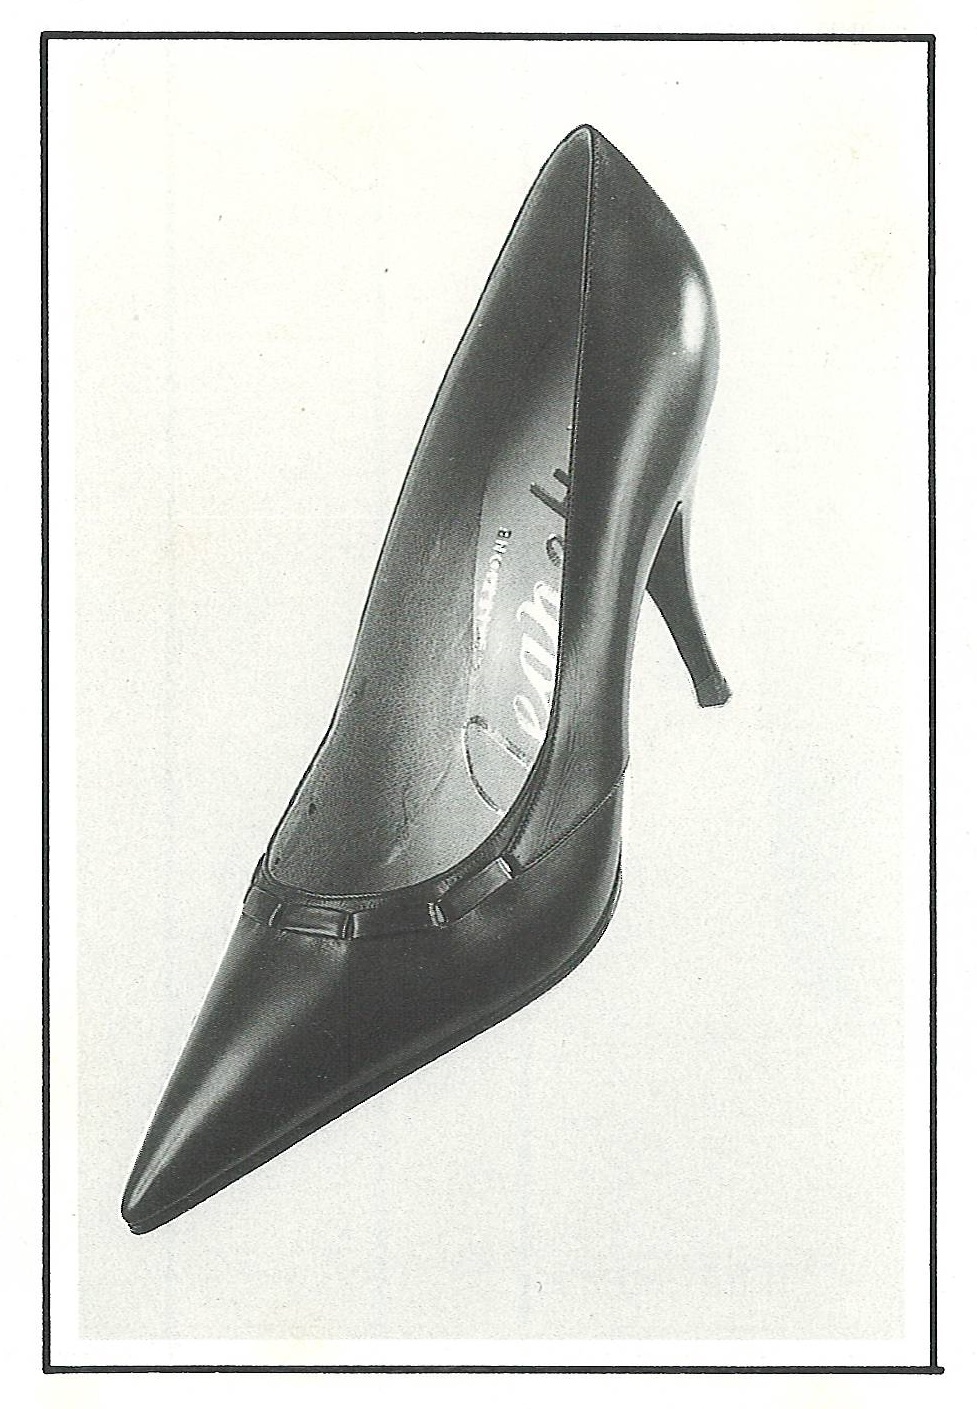 scarpe anni 60 donne